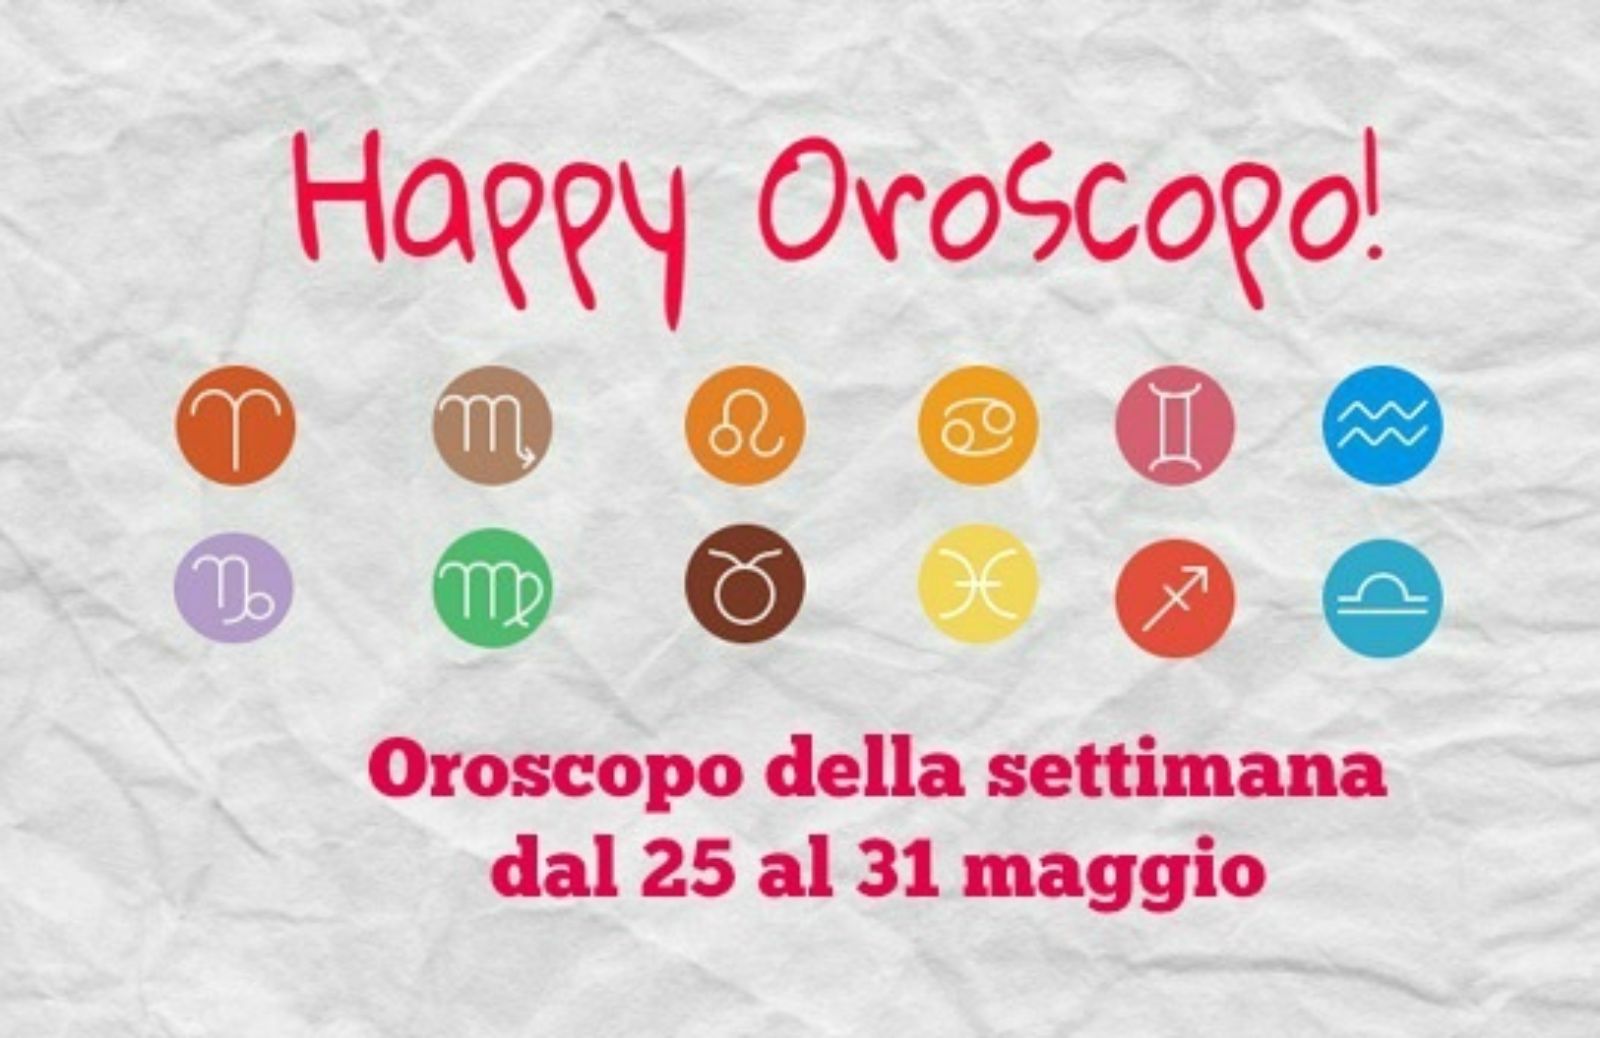 Happy Oroscopo della settimana: cosa dicono le stelle dal 25 al 31 maggio